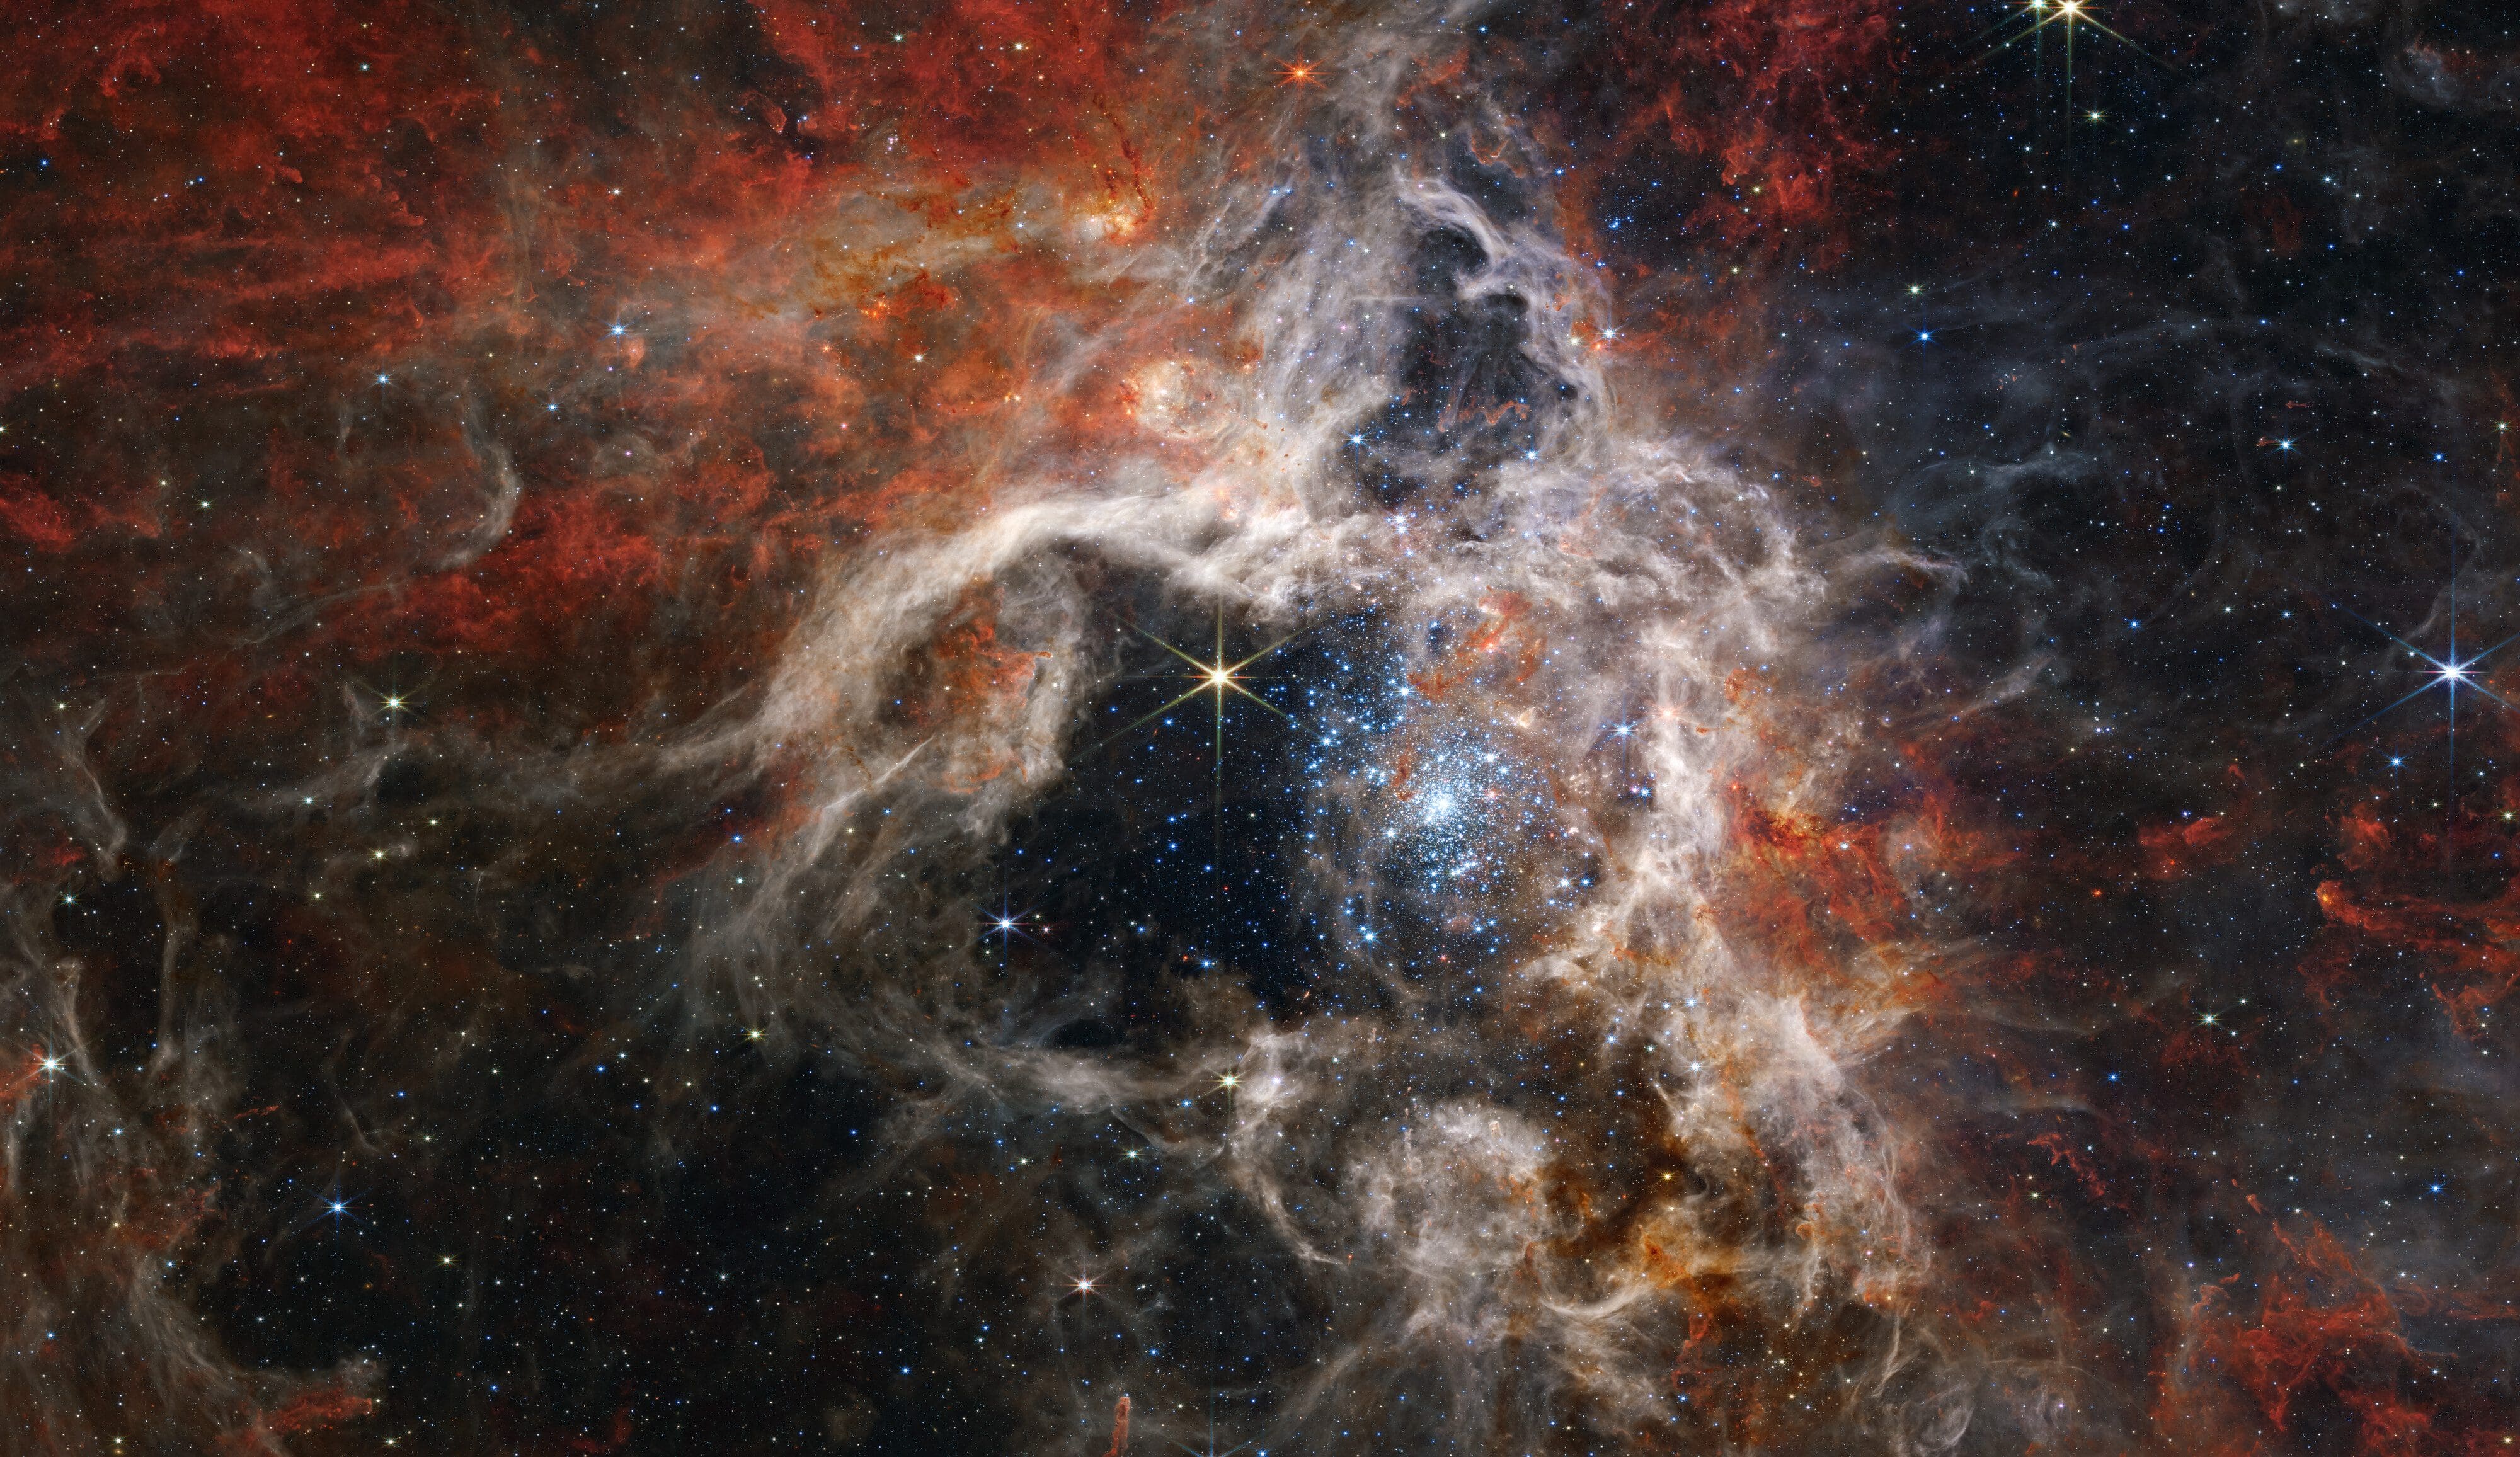 Blick in die Weiten des Kosmos: Das Bild zeigt den Tarantel-Nebel in etwa 180.000 Lichtjahren Entfernung – Foto NASA, ESA, CSA, and STScI, Creative Commons Attribution 4.0 International license